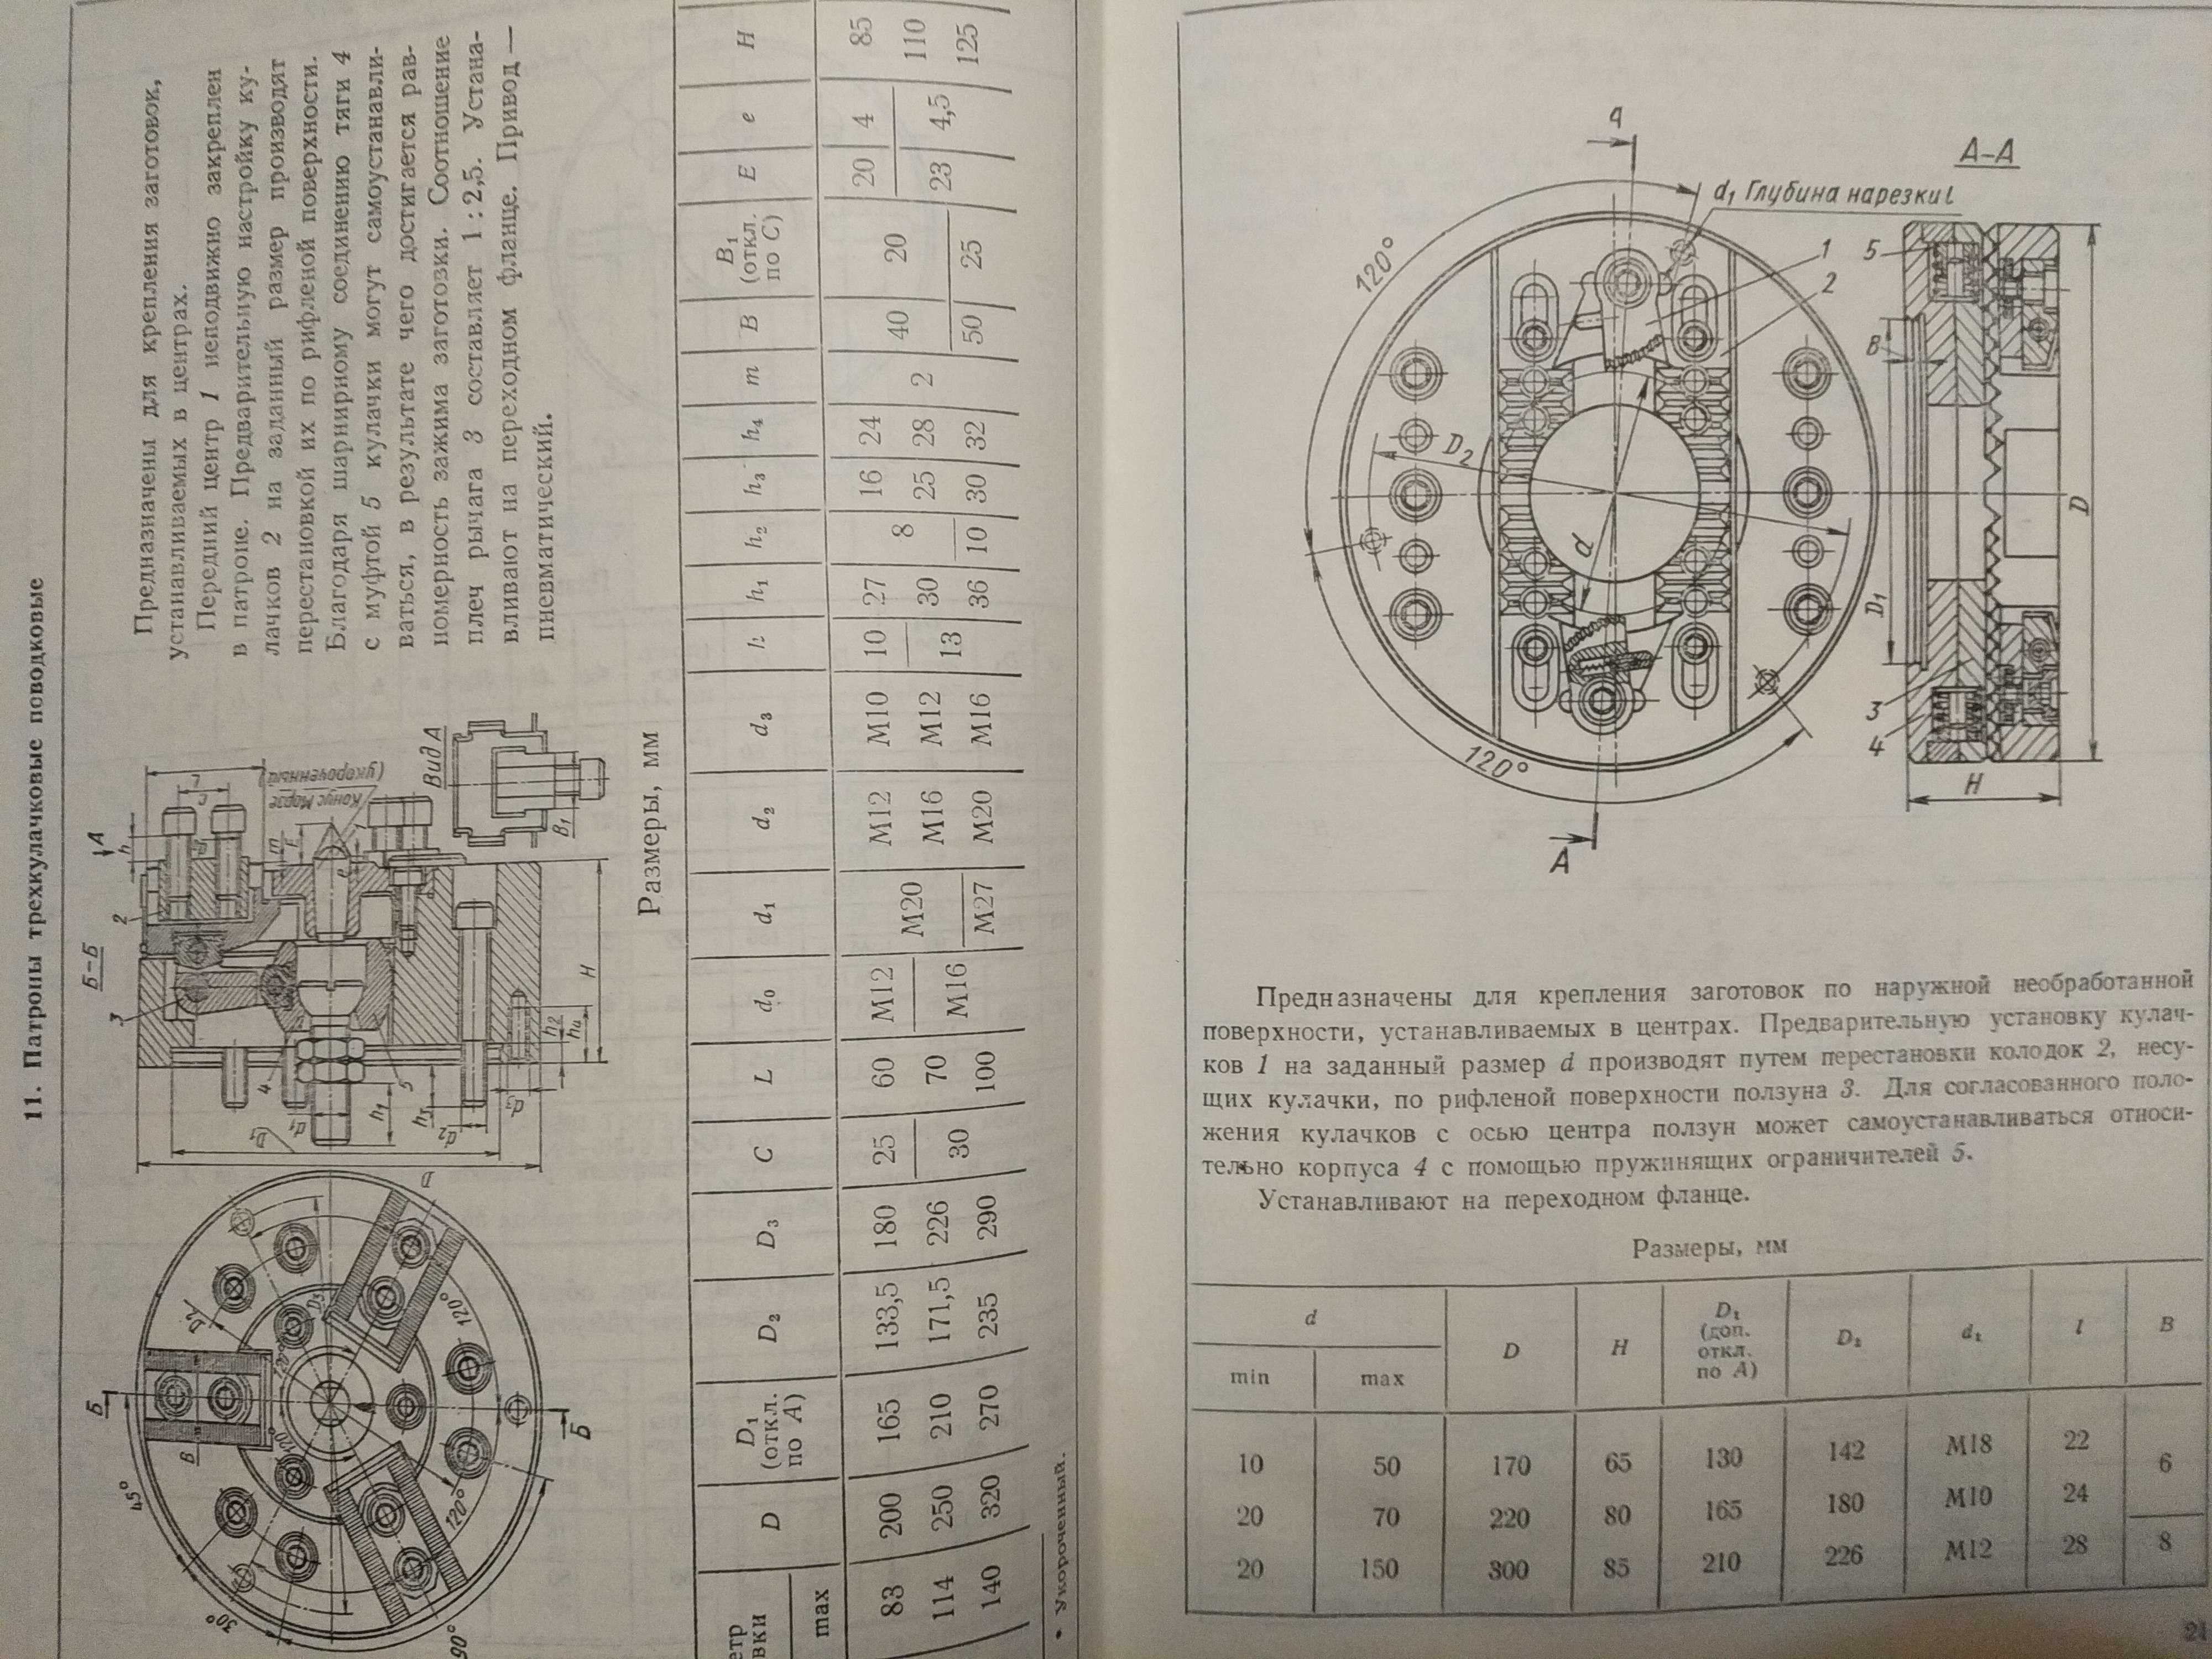 Горошкин: "Приспособления для металлорежущих станков" 1979 г.